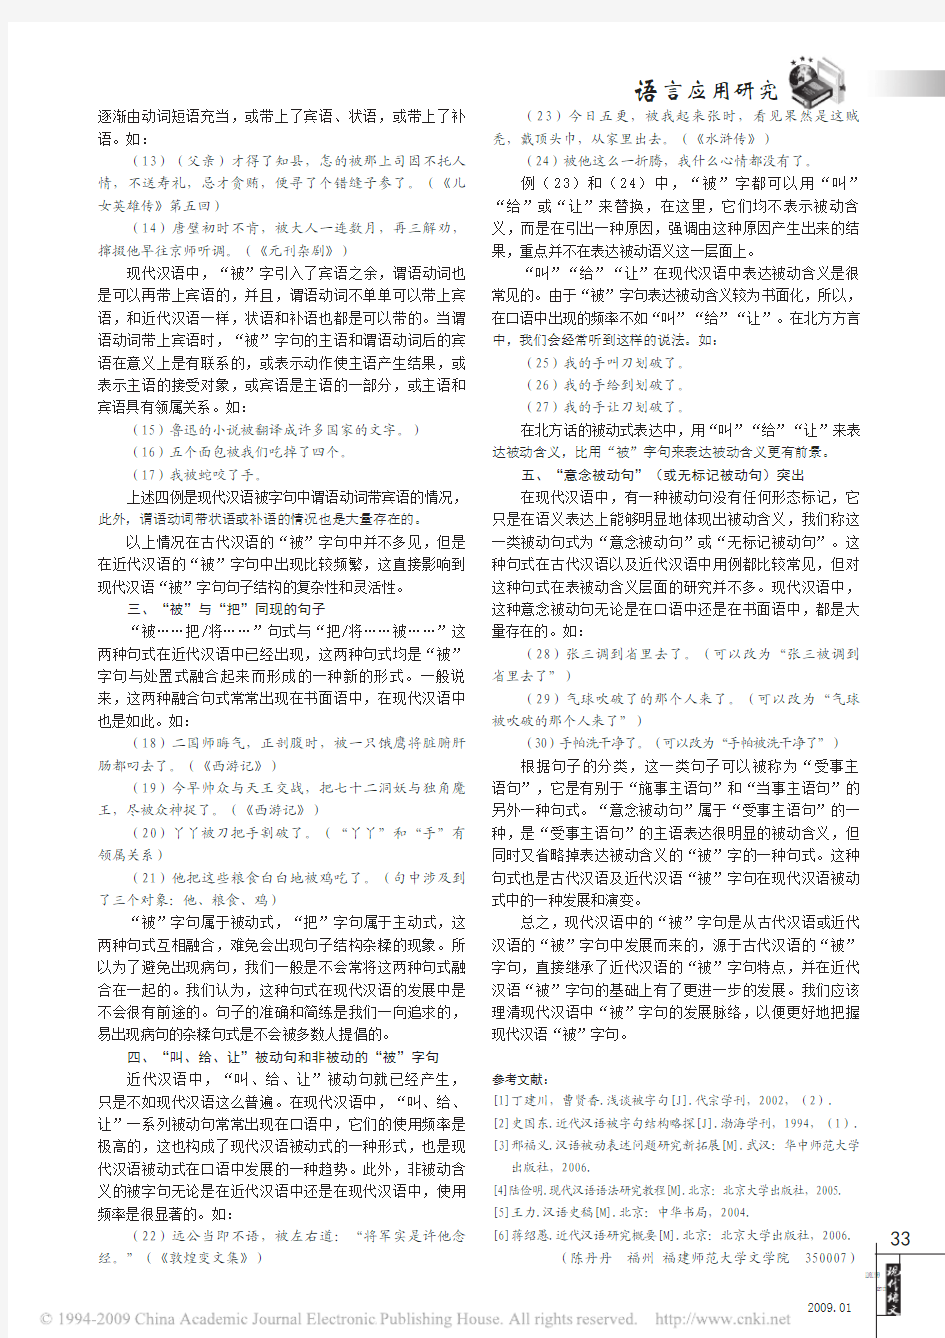 近代汉语_被_字句结构在现代汉语中的发展